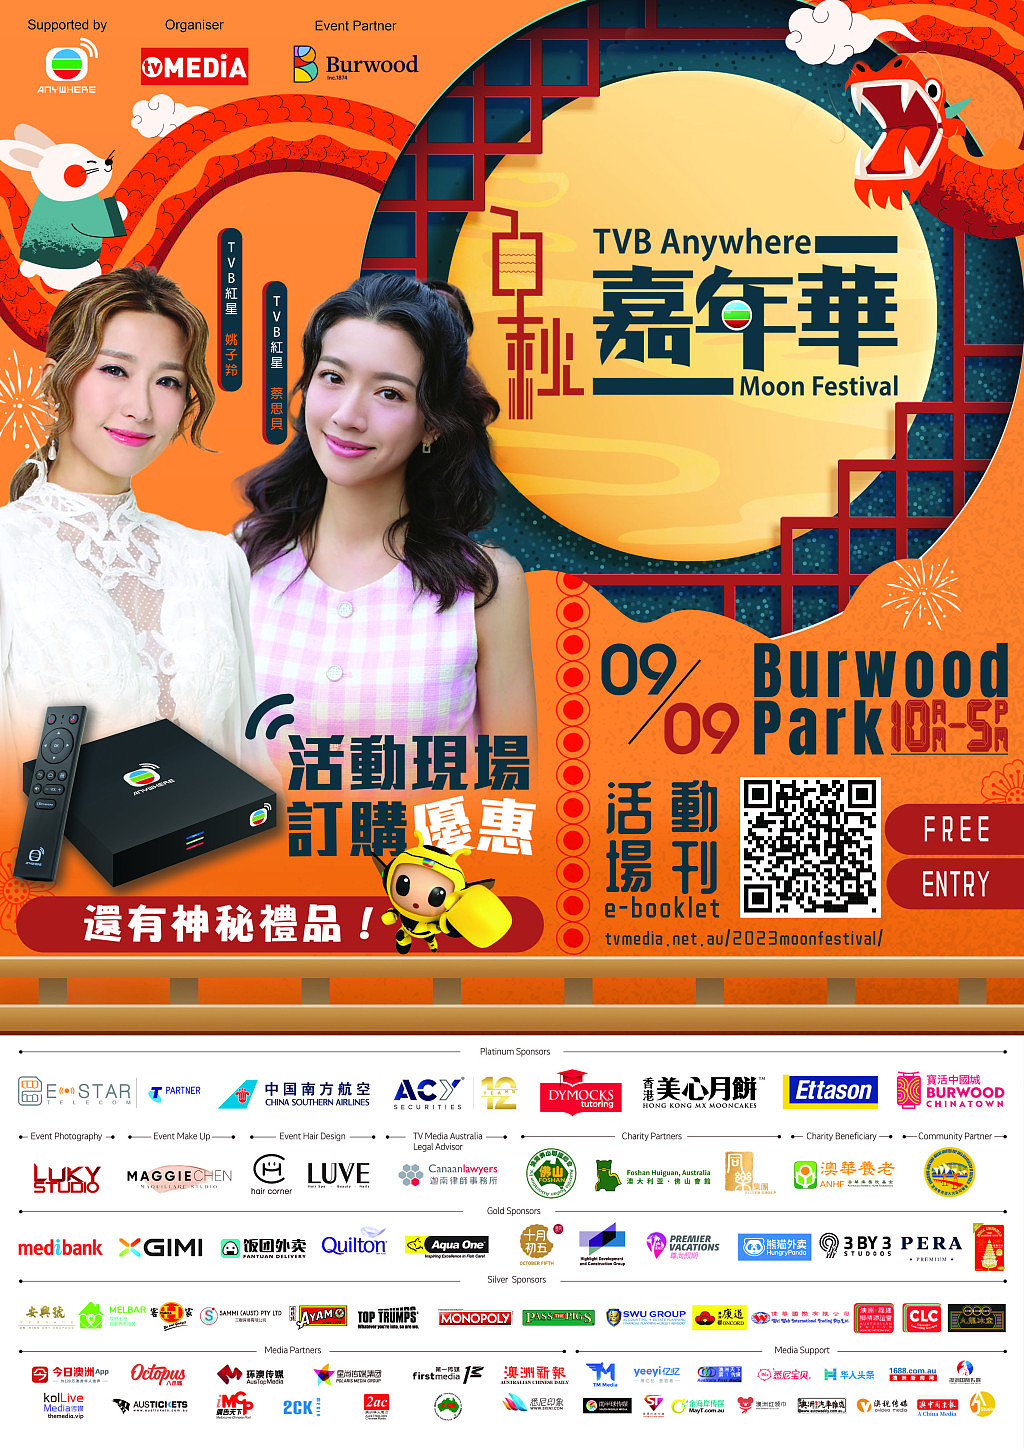 圖1_TVB Anywhere Moon Festival Poster.jpg,0